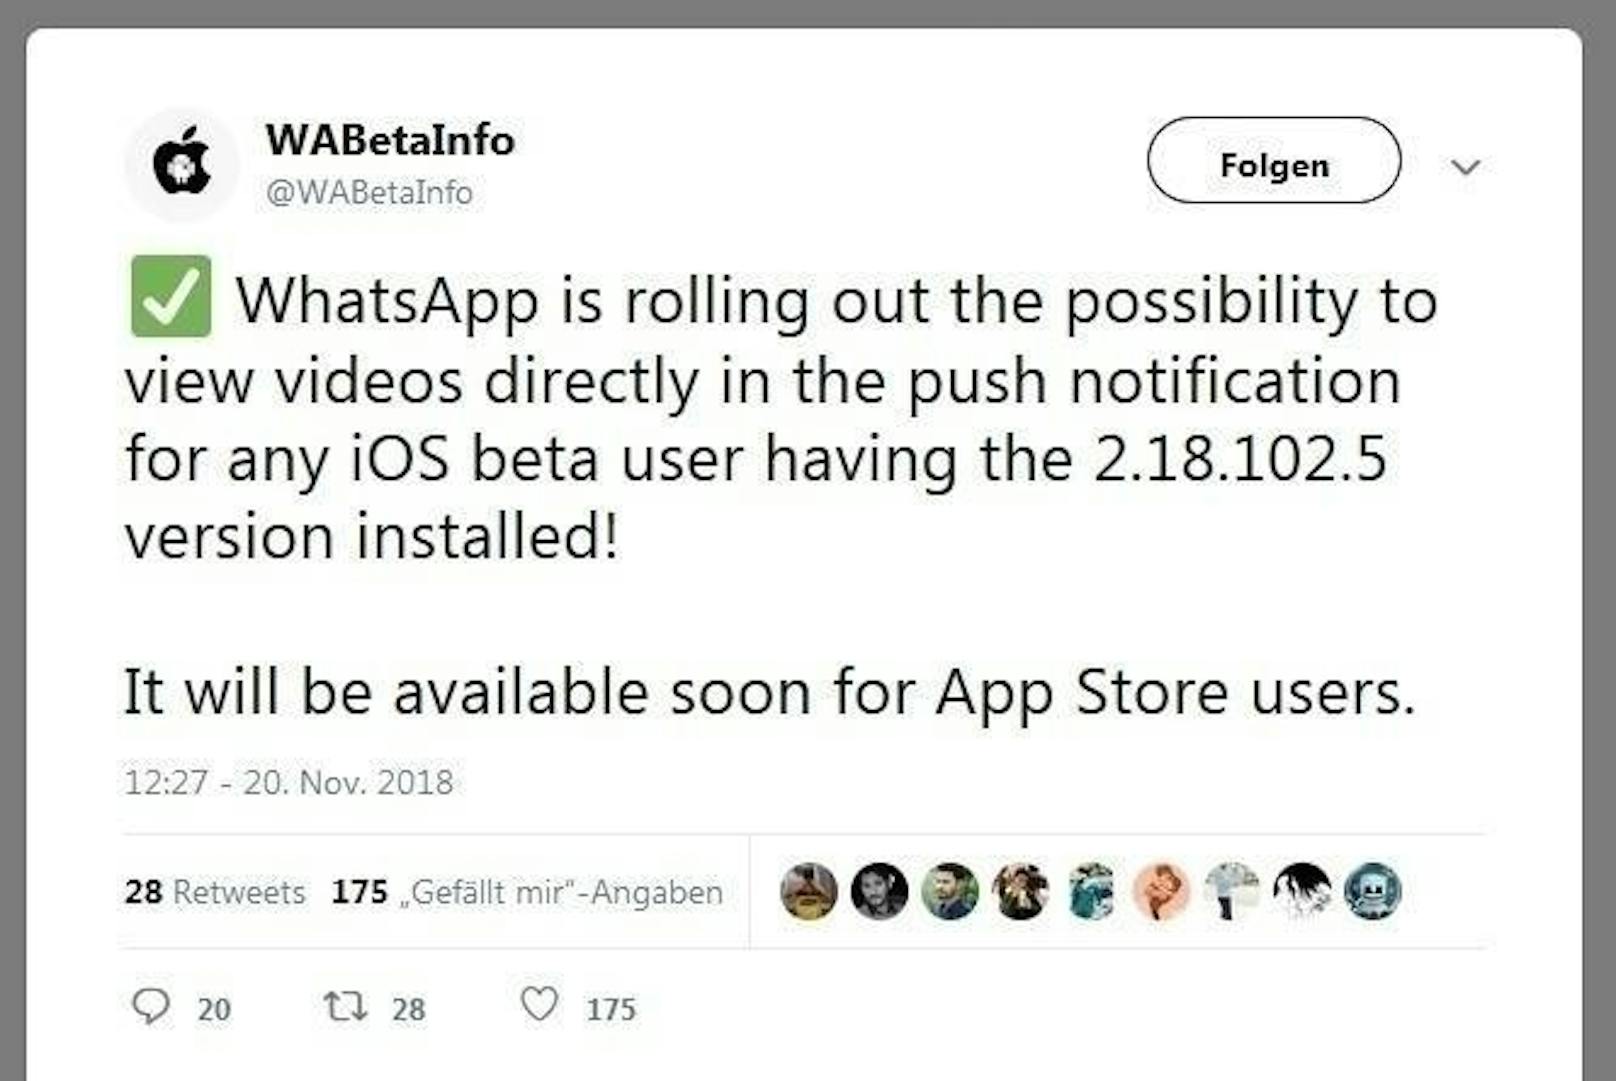 Das berichten die Experten von Wabetainfo auf Twitter. Demnach ist die Funktion auch bald schon im App Store erhältlich.